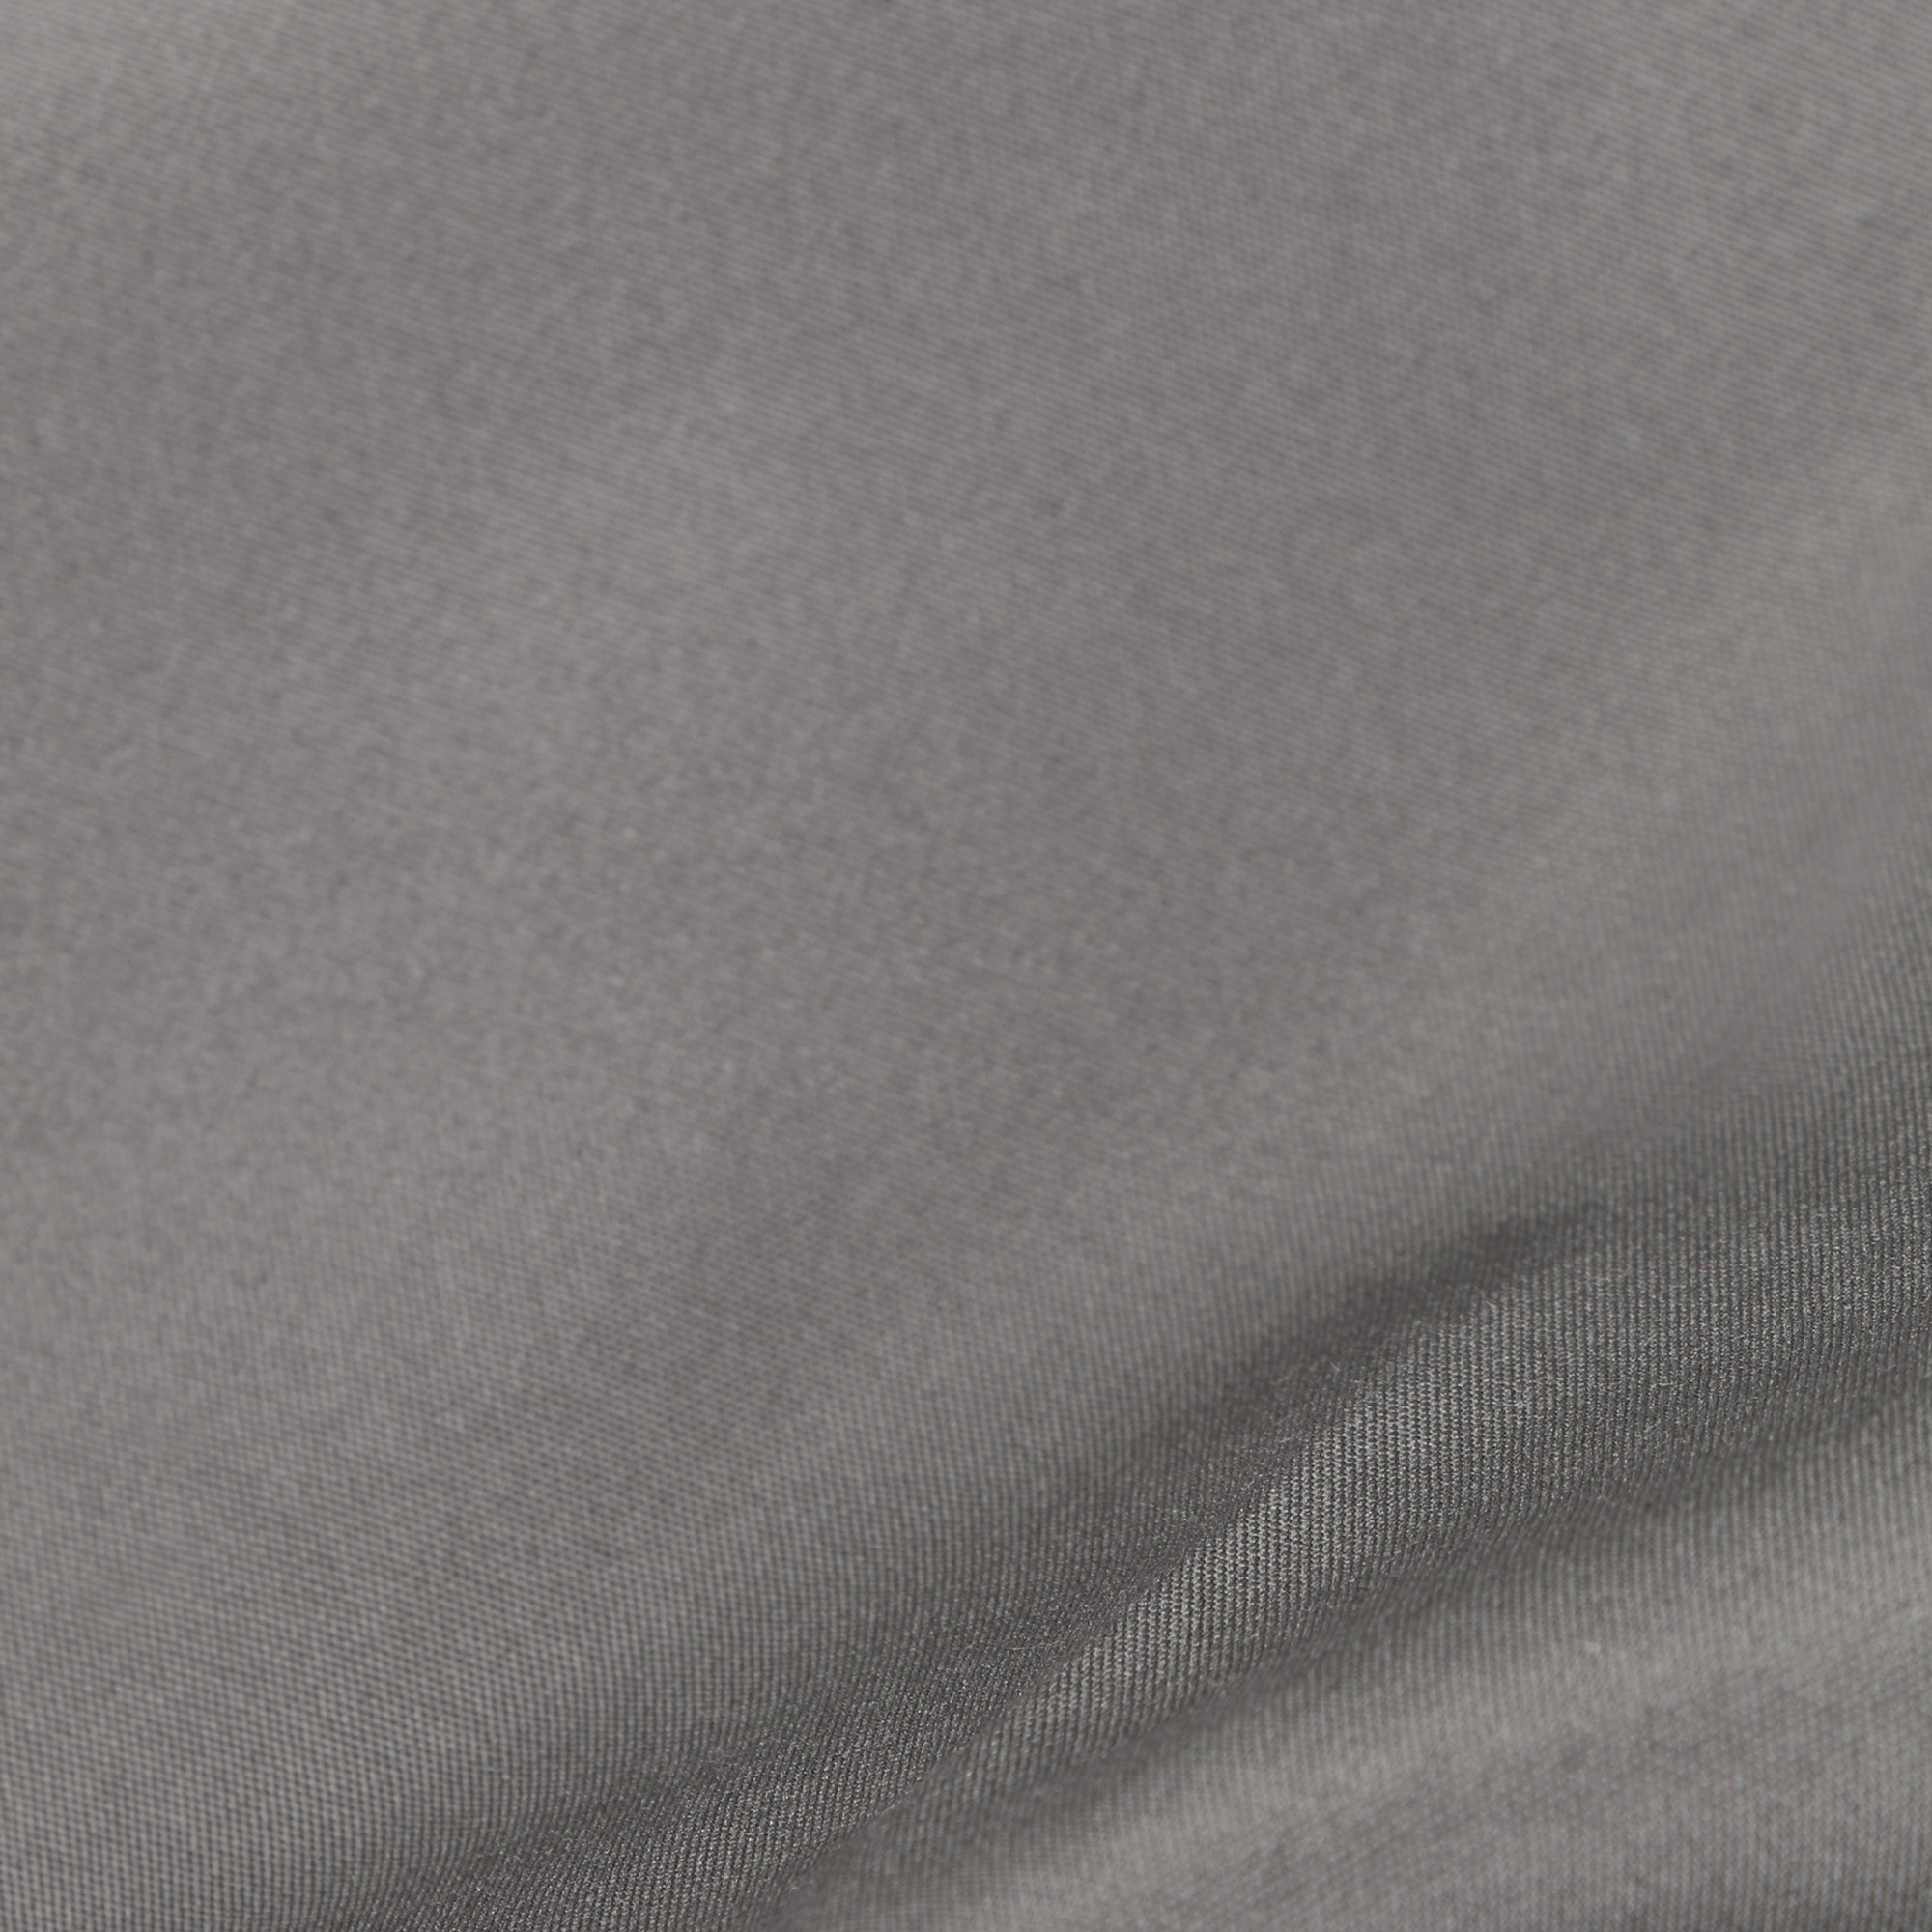 фото Мужские шорты пляжные pantelemone ph-114 темно-серые 54